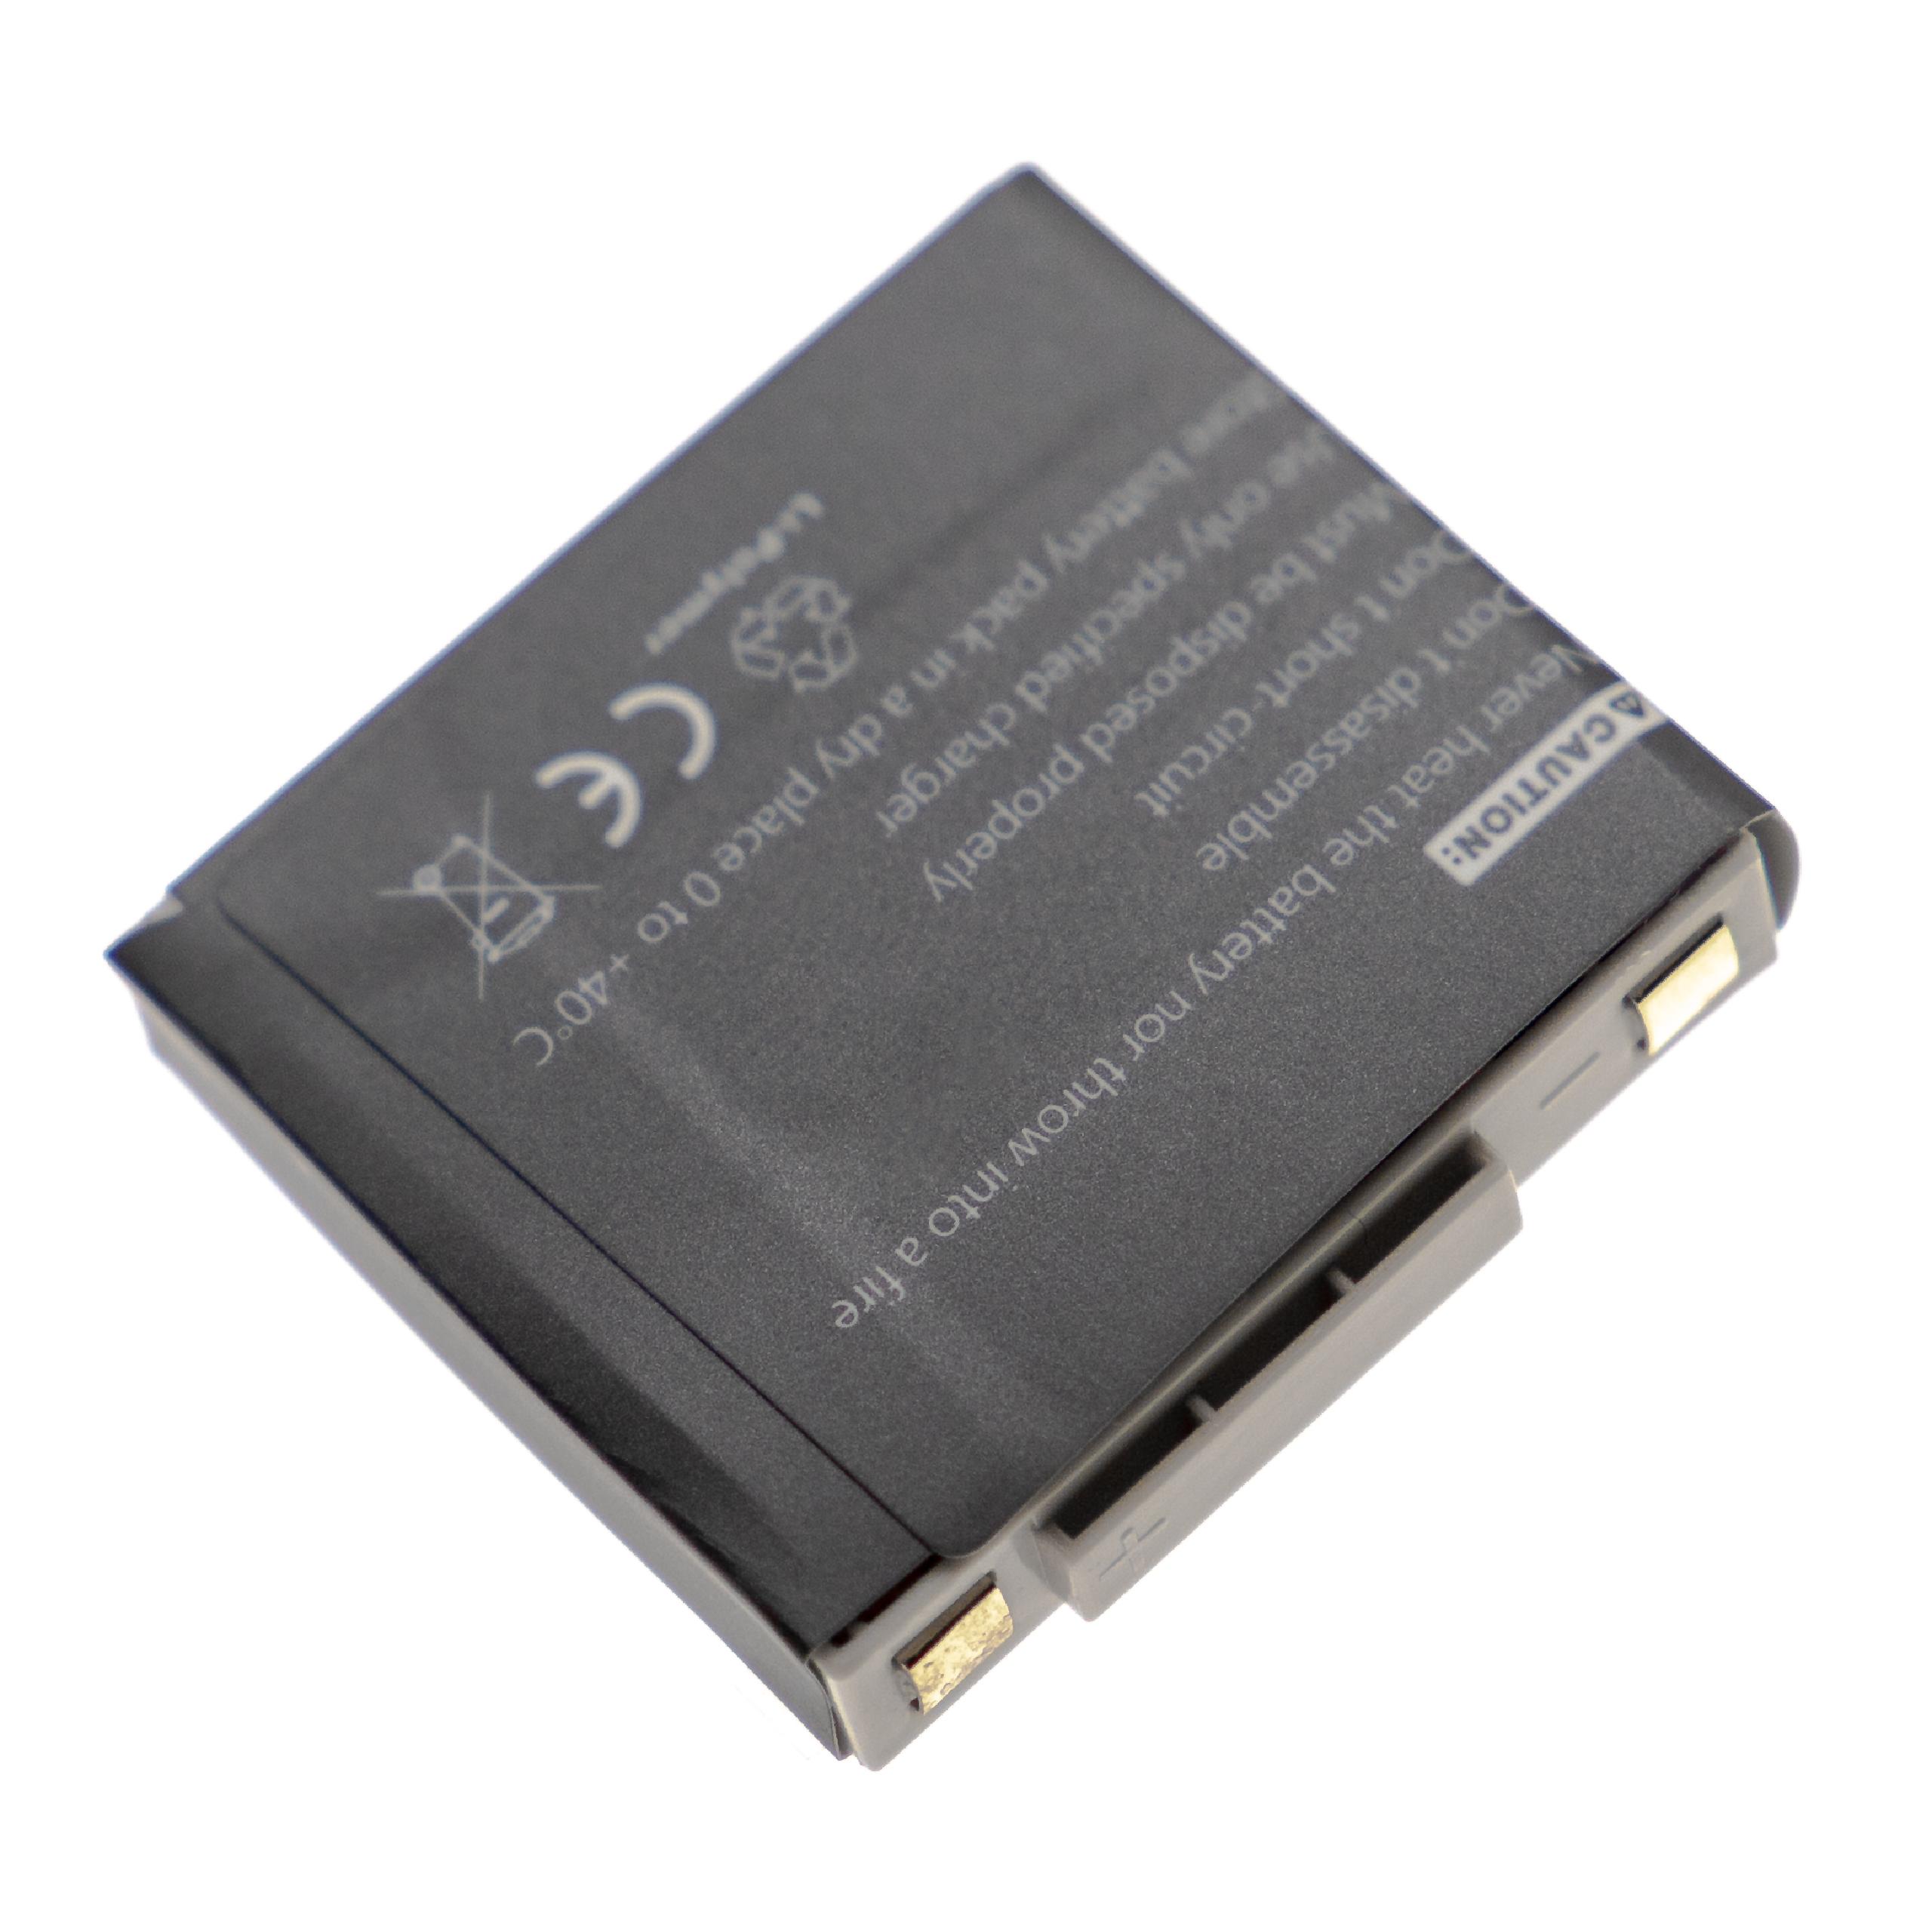 Akumulator do słuchawek bezprzewodowych zamiennik GN Netcom 2901-249, 14151-02, 14151-01 - 340 mAh 3,7 V LiPo